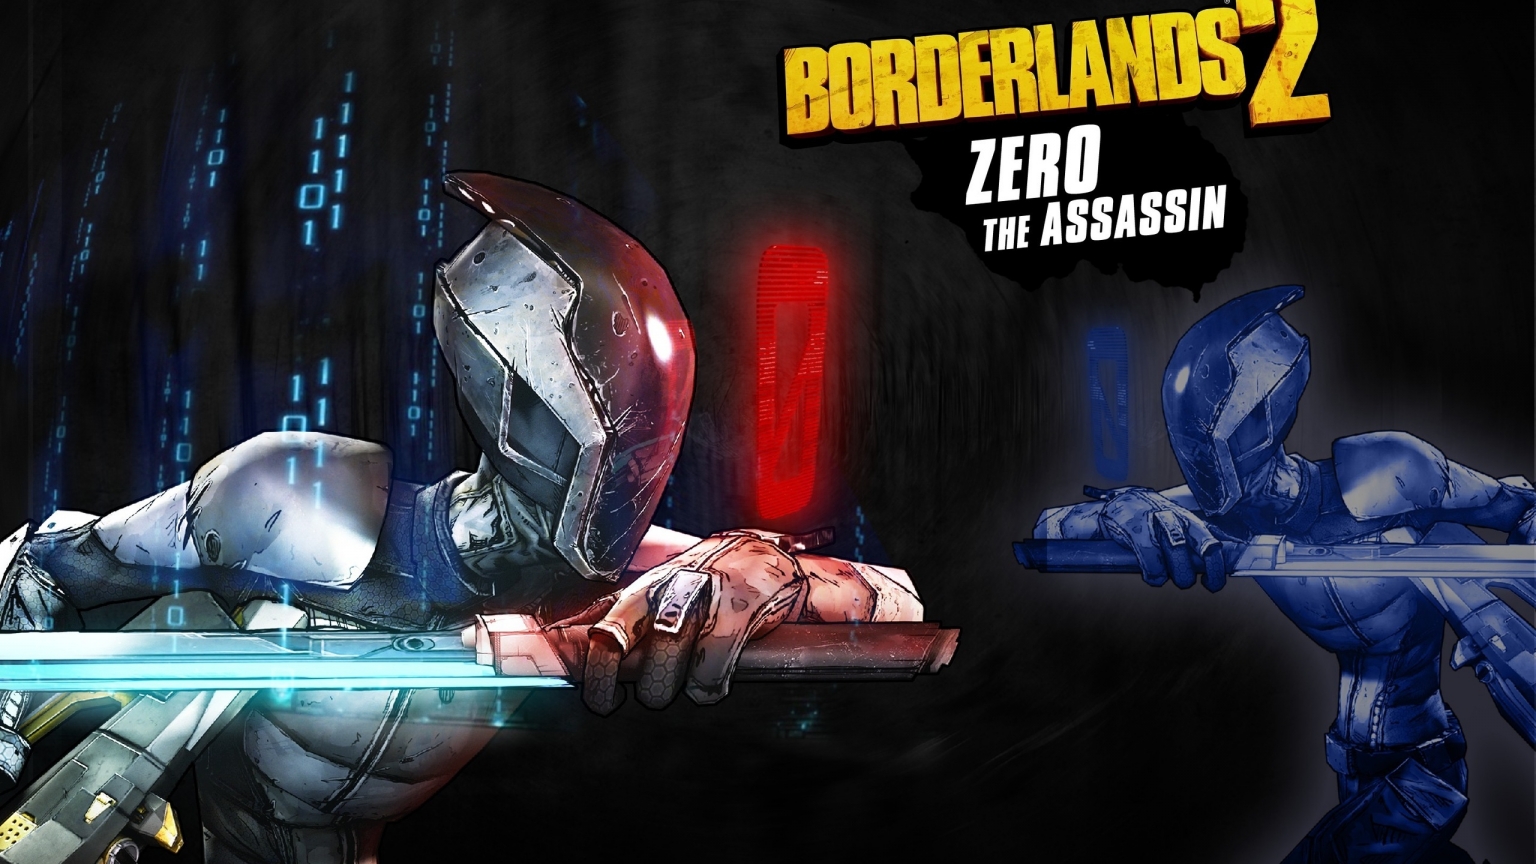 Zero The Assassin Borderlands 2  for 1536 x 864 HDTV resolution